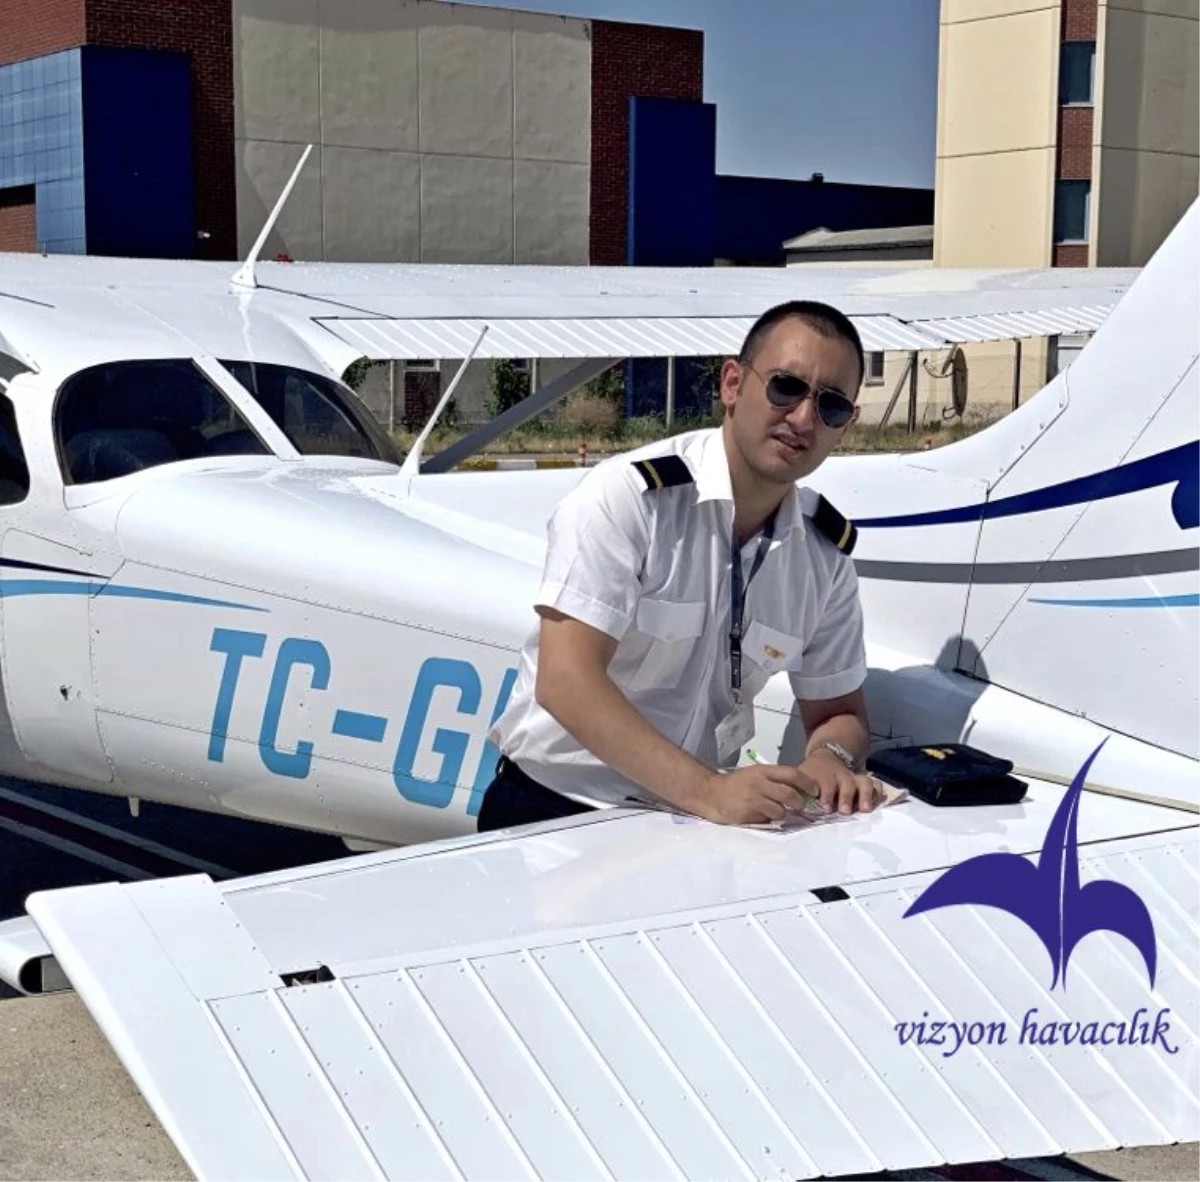 Vizyon havacılık ilk pilot mezunlarını vermeye başladı…